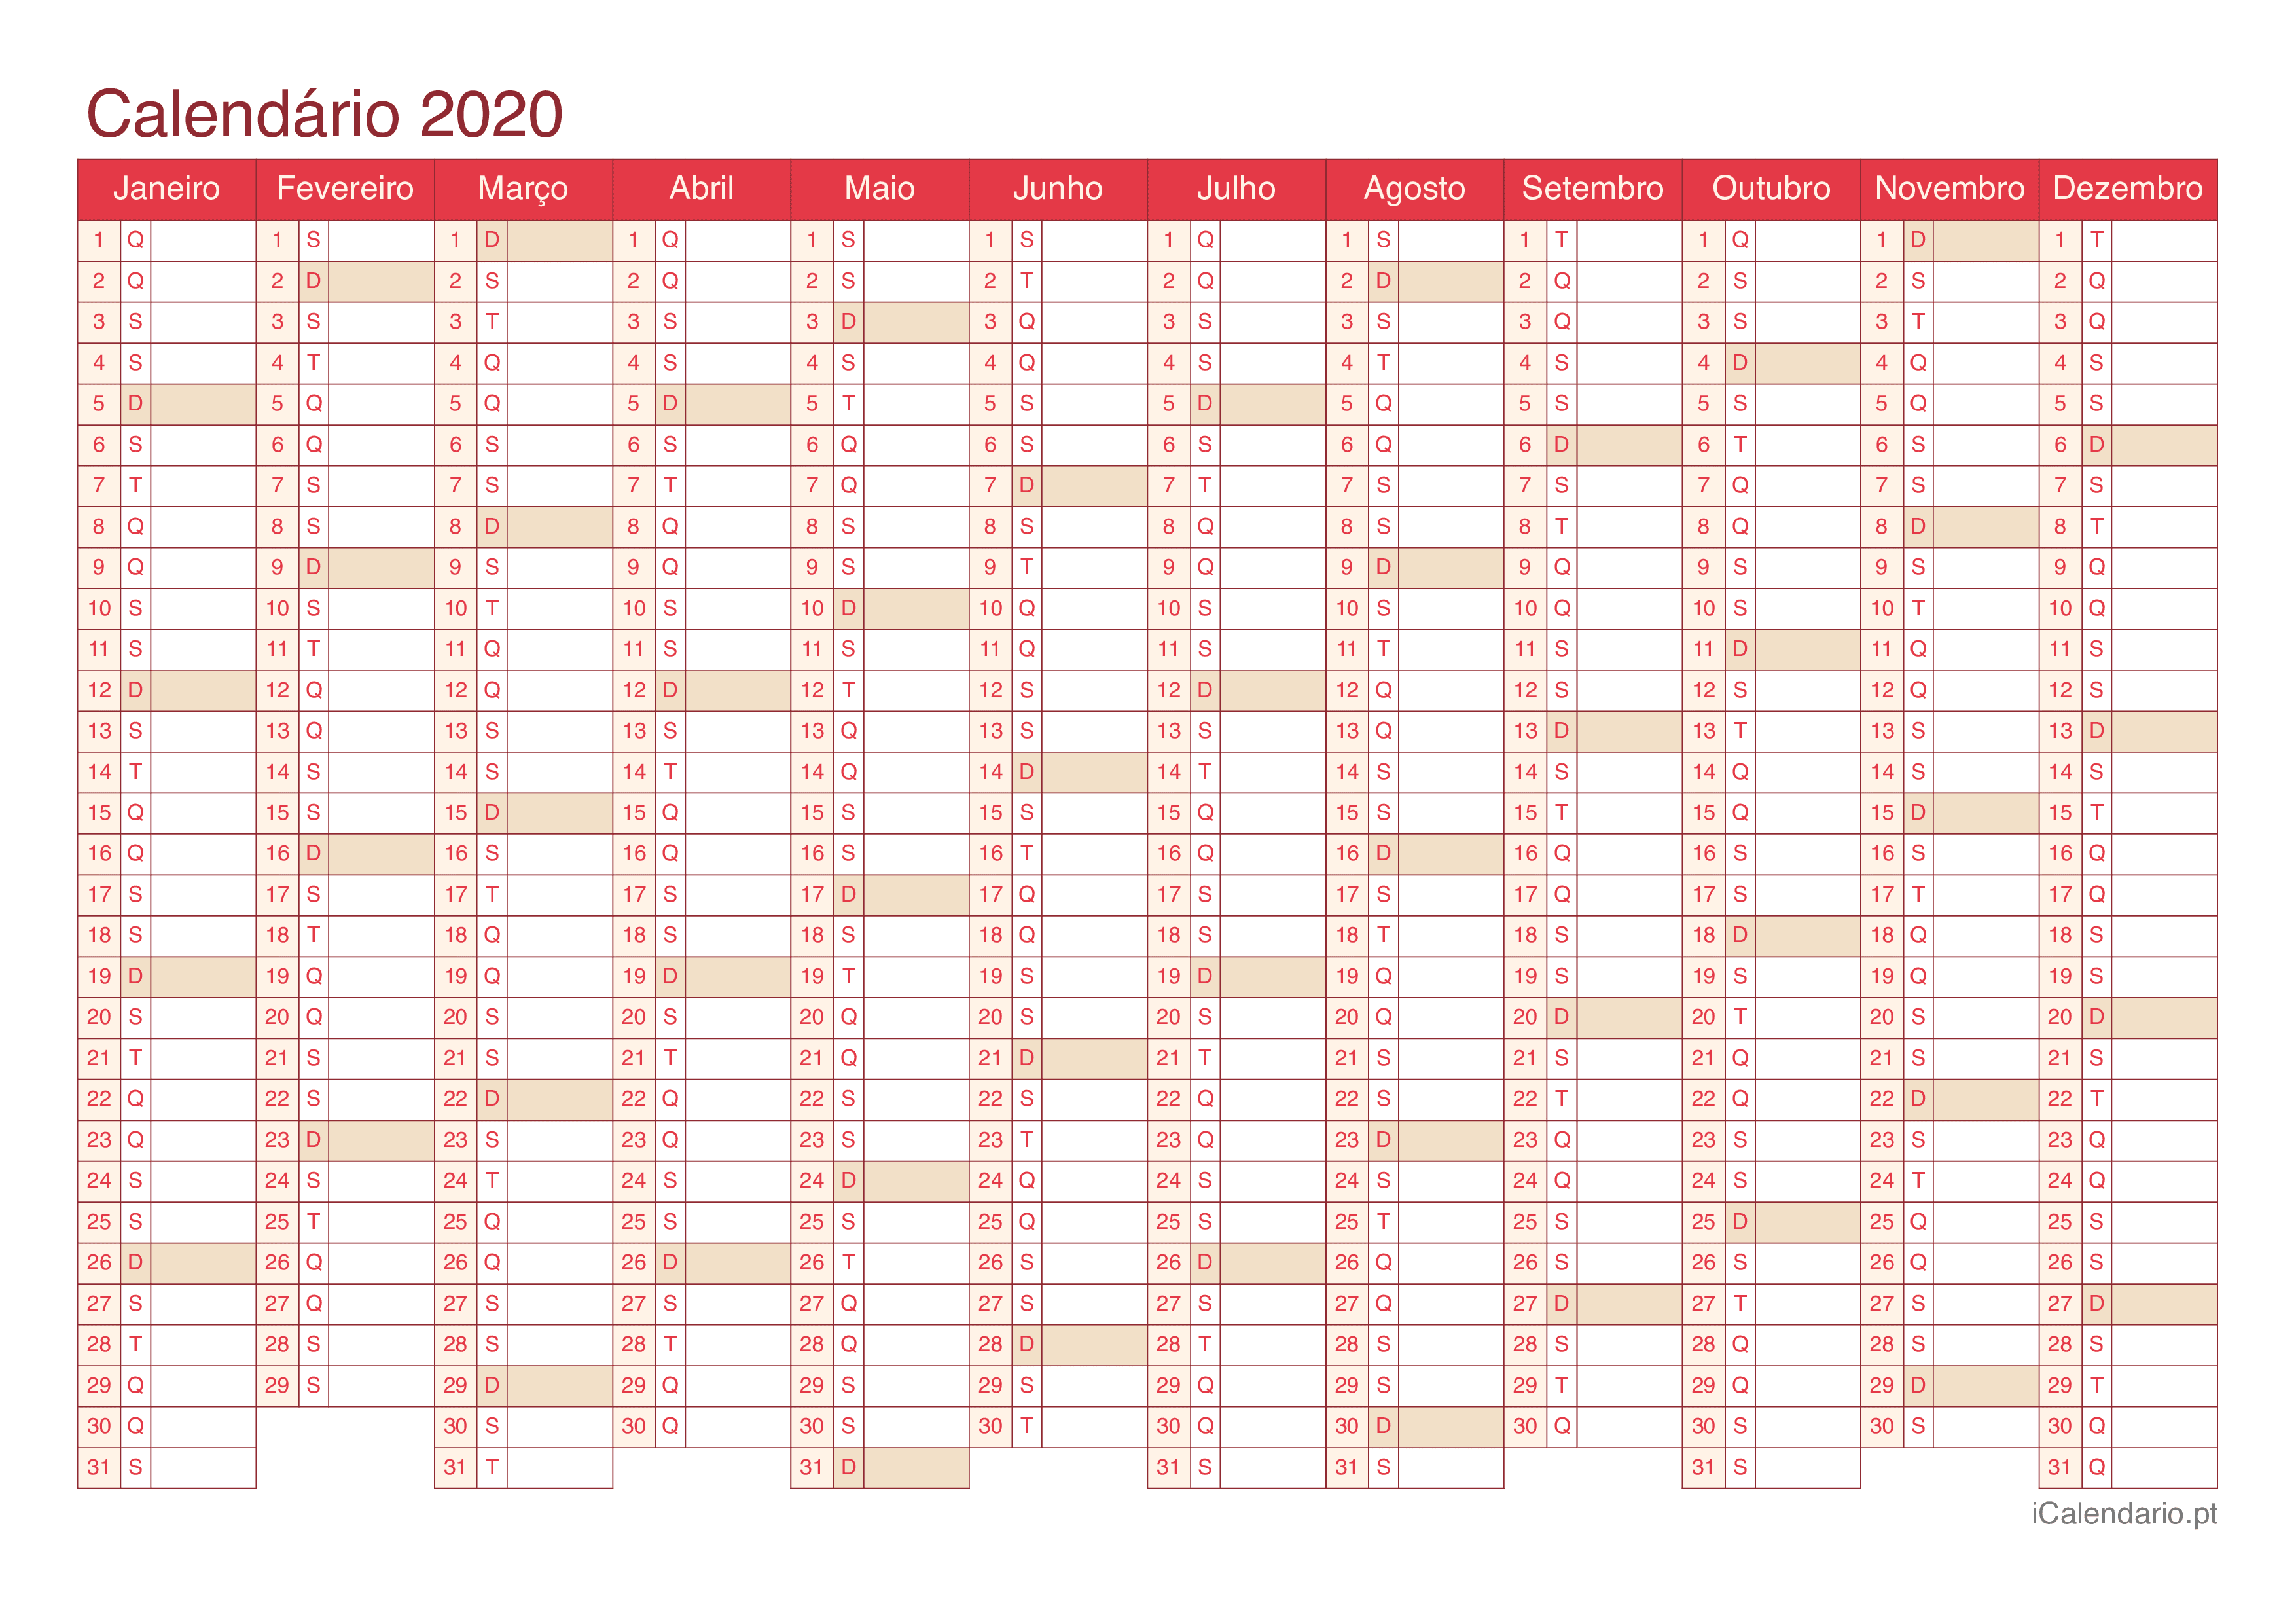 Calendário 2020 - Cherry